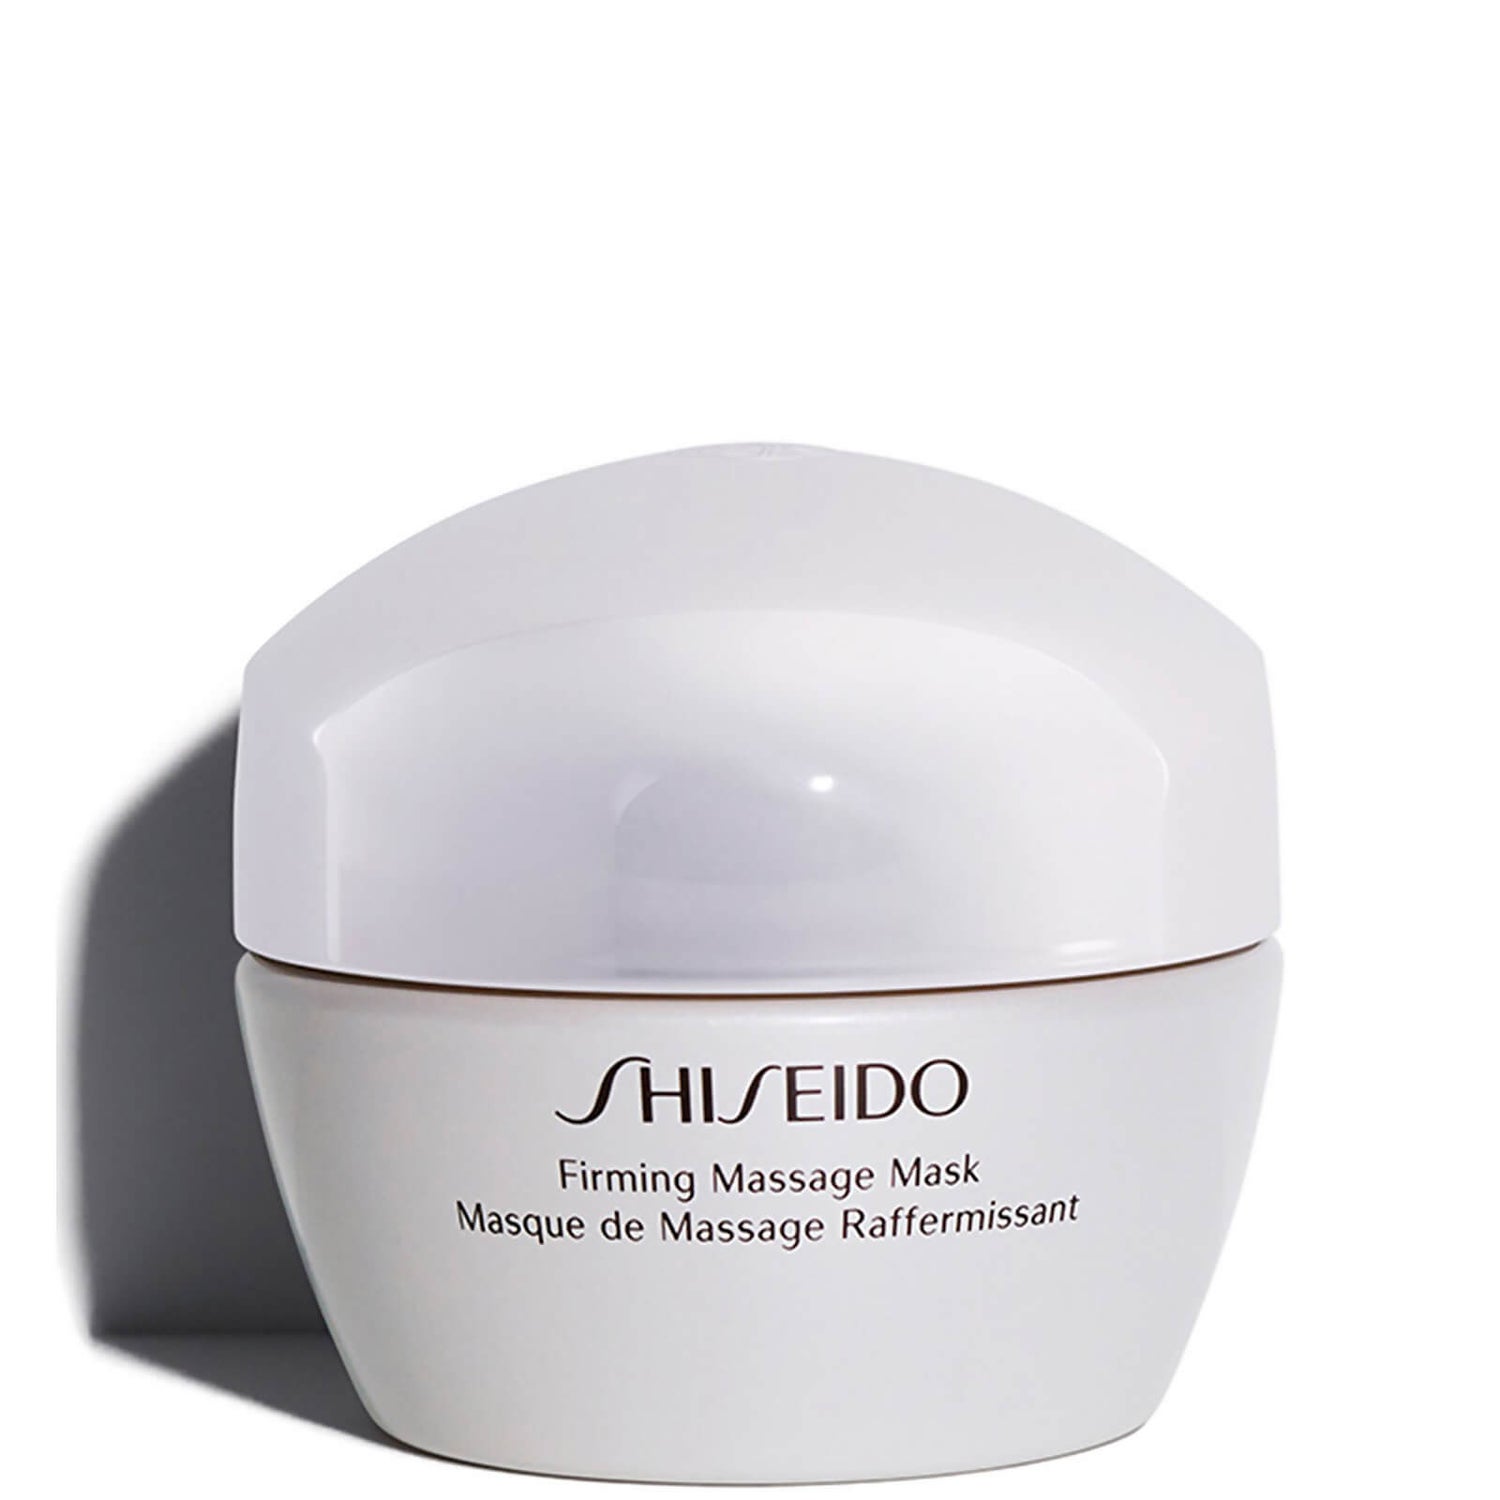 Acostumbrar beneficio No de moda Shiseido Firming Massage Mask 50ml | Envío Gratuito | Lookfantastic